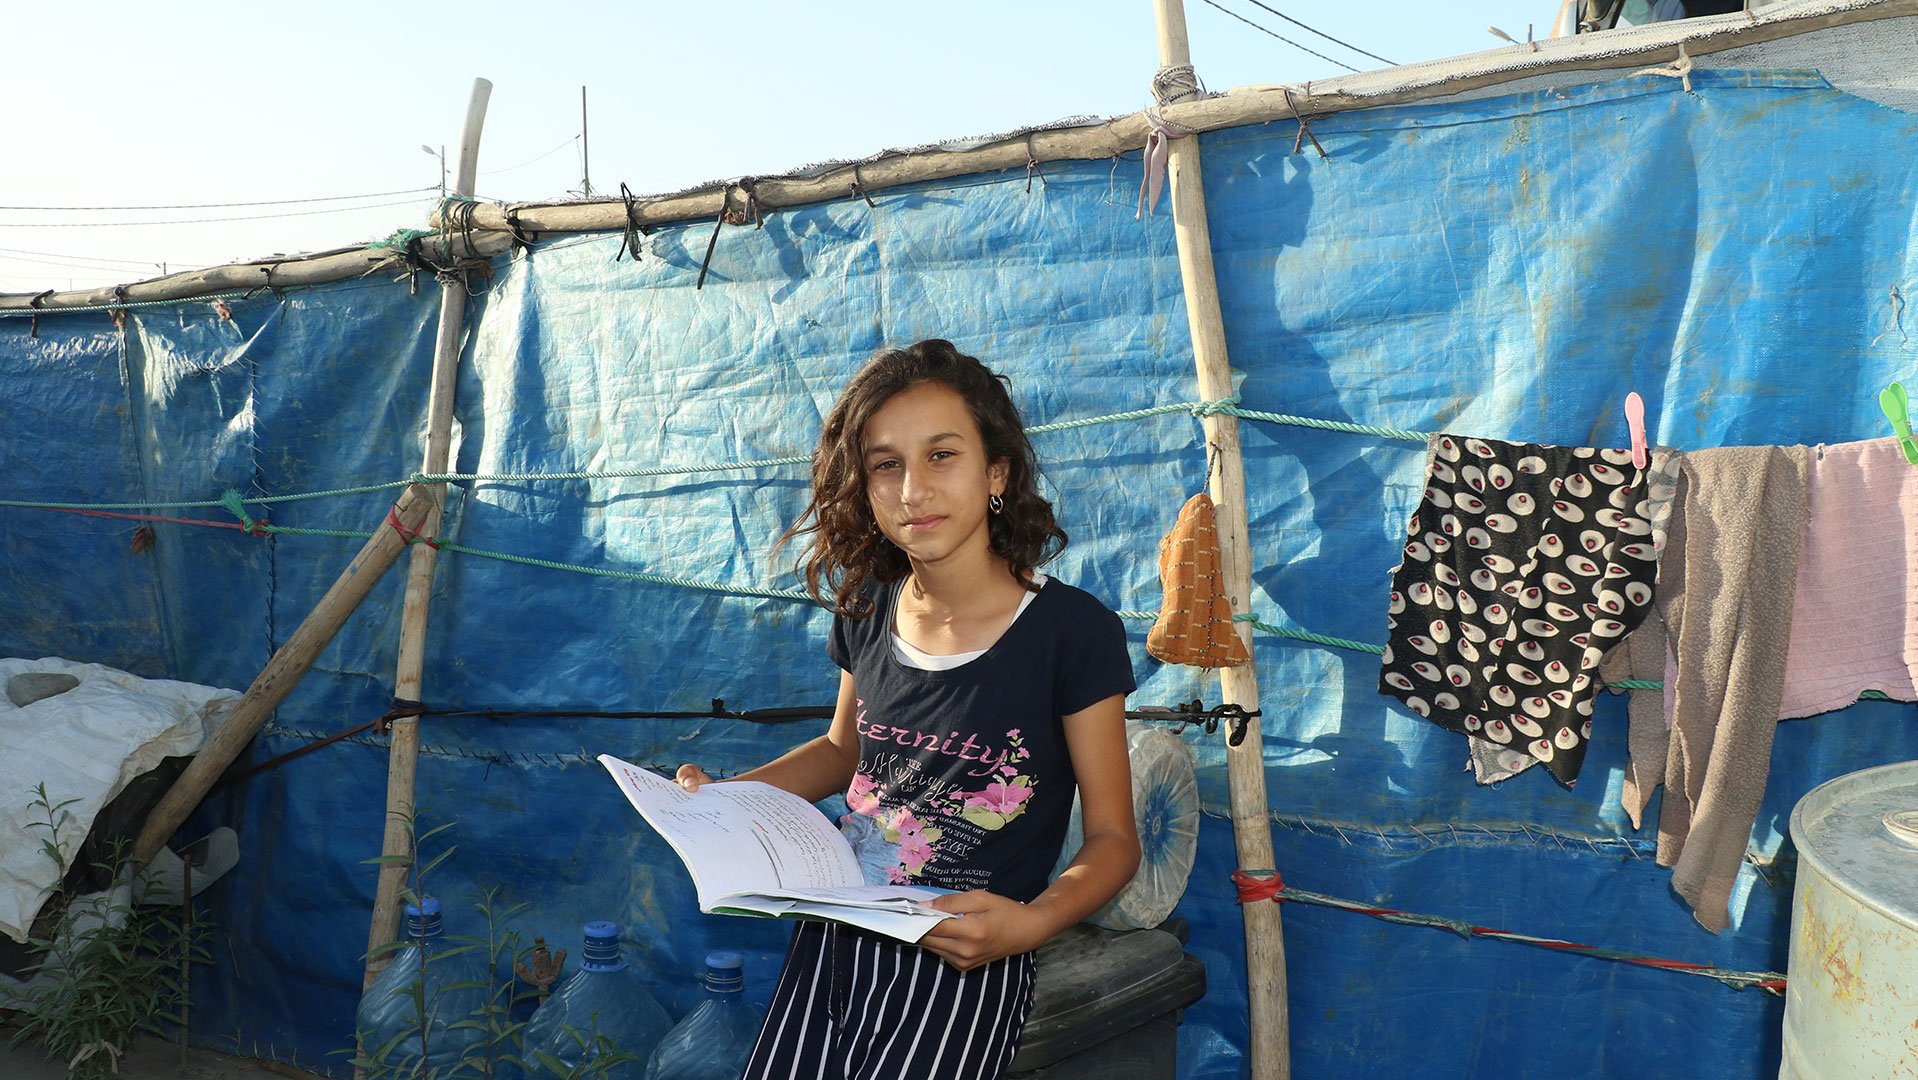 War Child helpt Irakese kinderen in oorlog weer kind zijn op veilige plekken